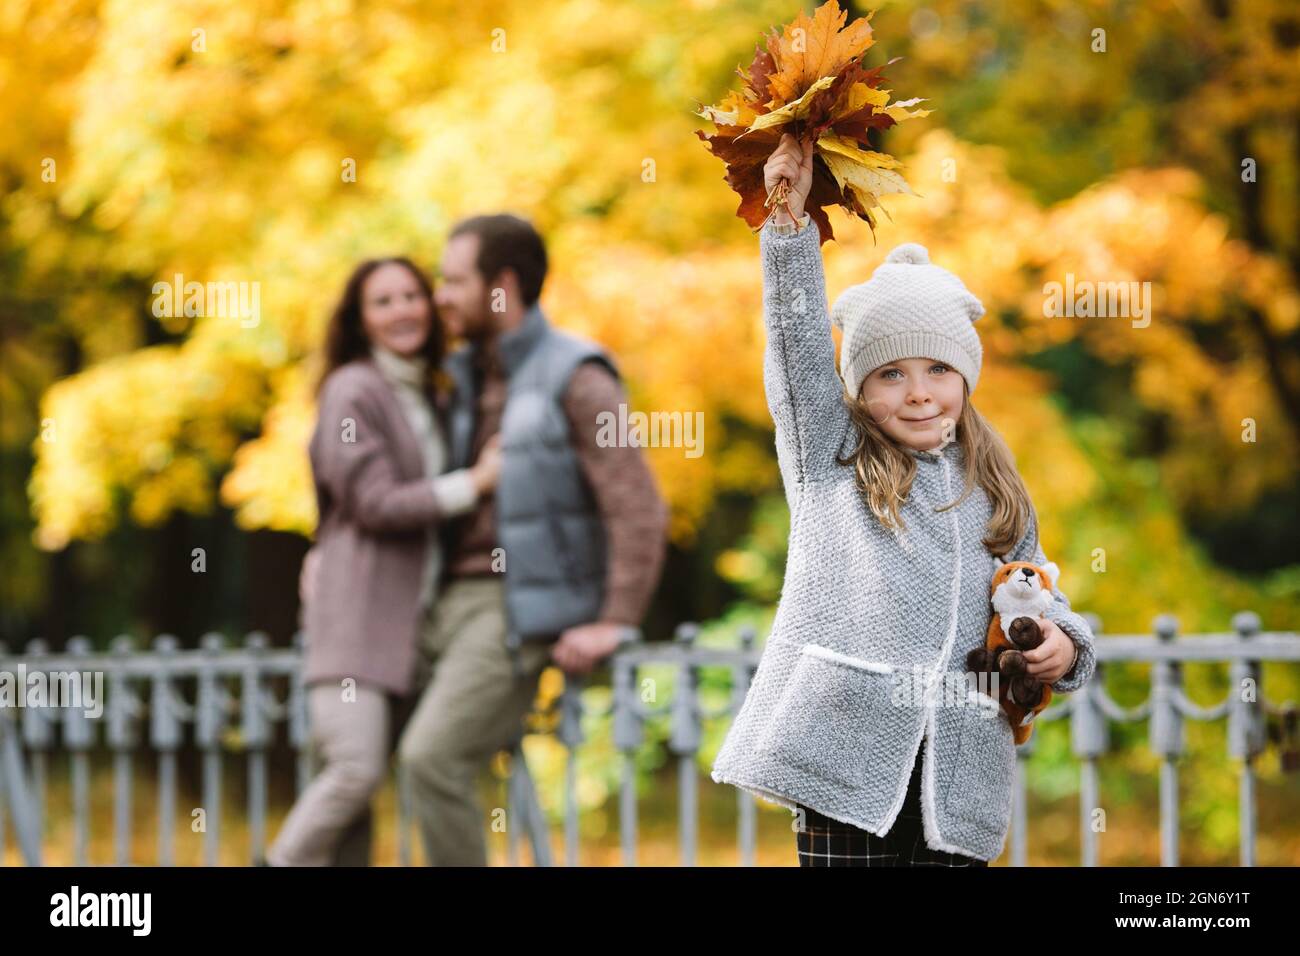 Promenade en famille dans le parc d'automne. Les parents amoureux de petite fille embrassent dehors dans la forêt avec des arbres colorés Banque D'Images